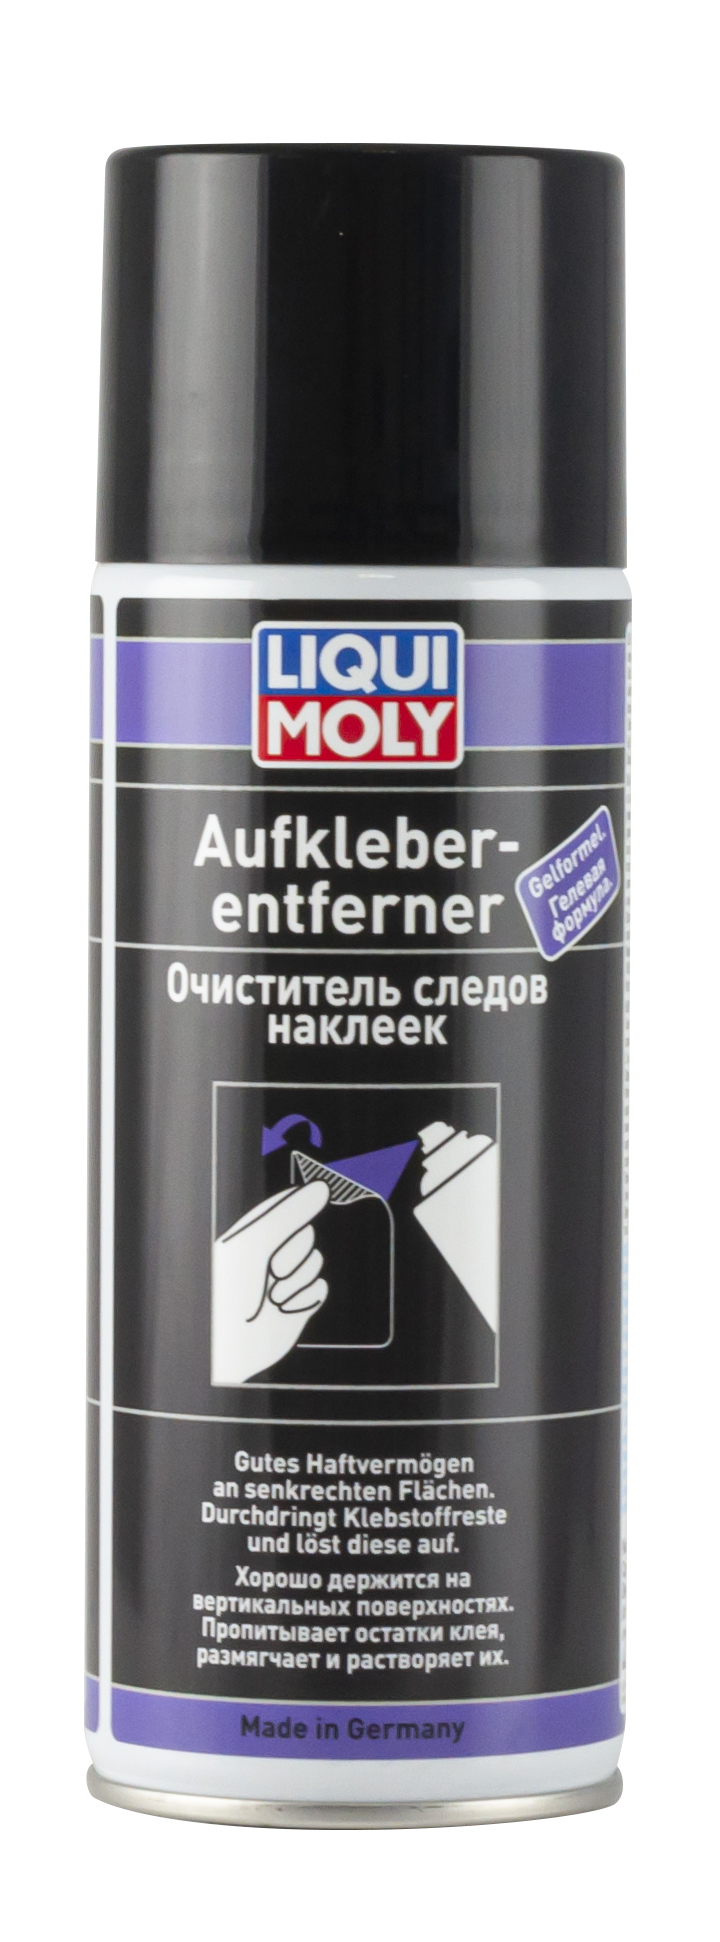 Liqui Moly Aufkleberentferner Очиститель следов наклеек